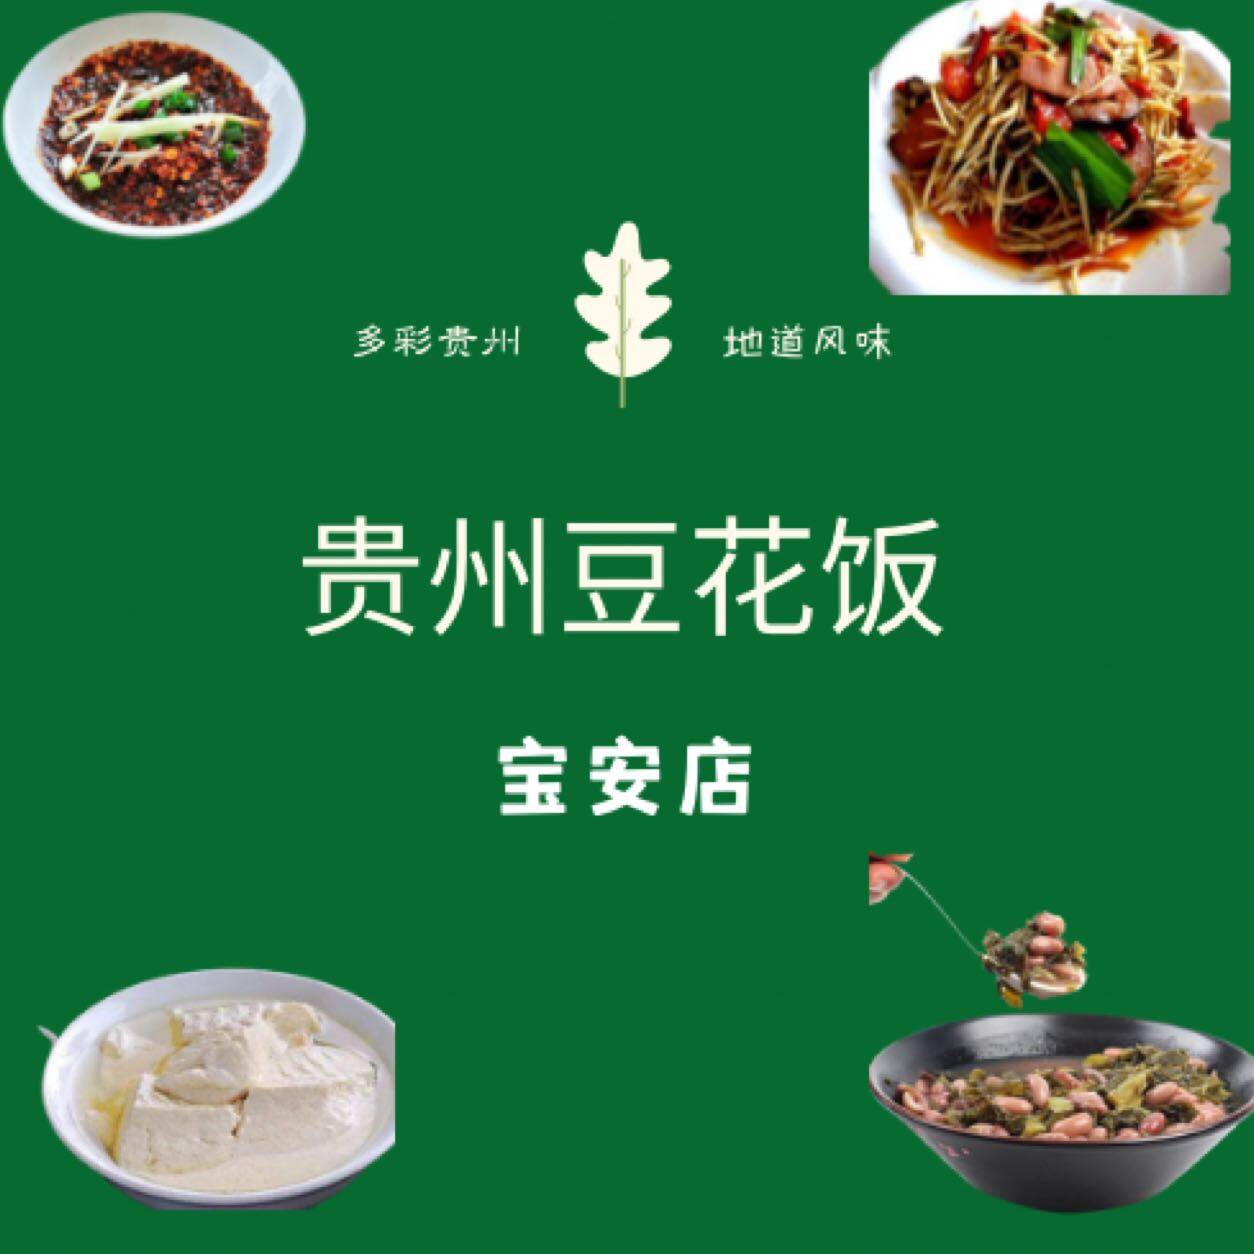 深圳市宝安区黄记豆花饭店logo